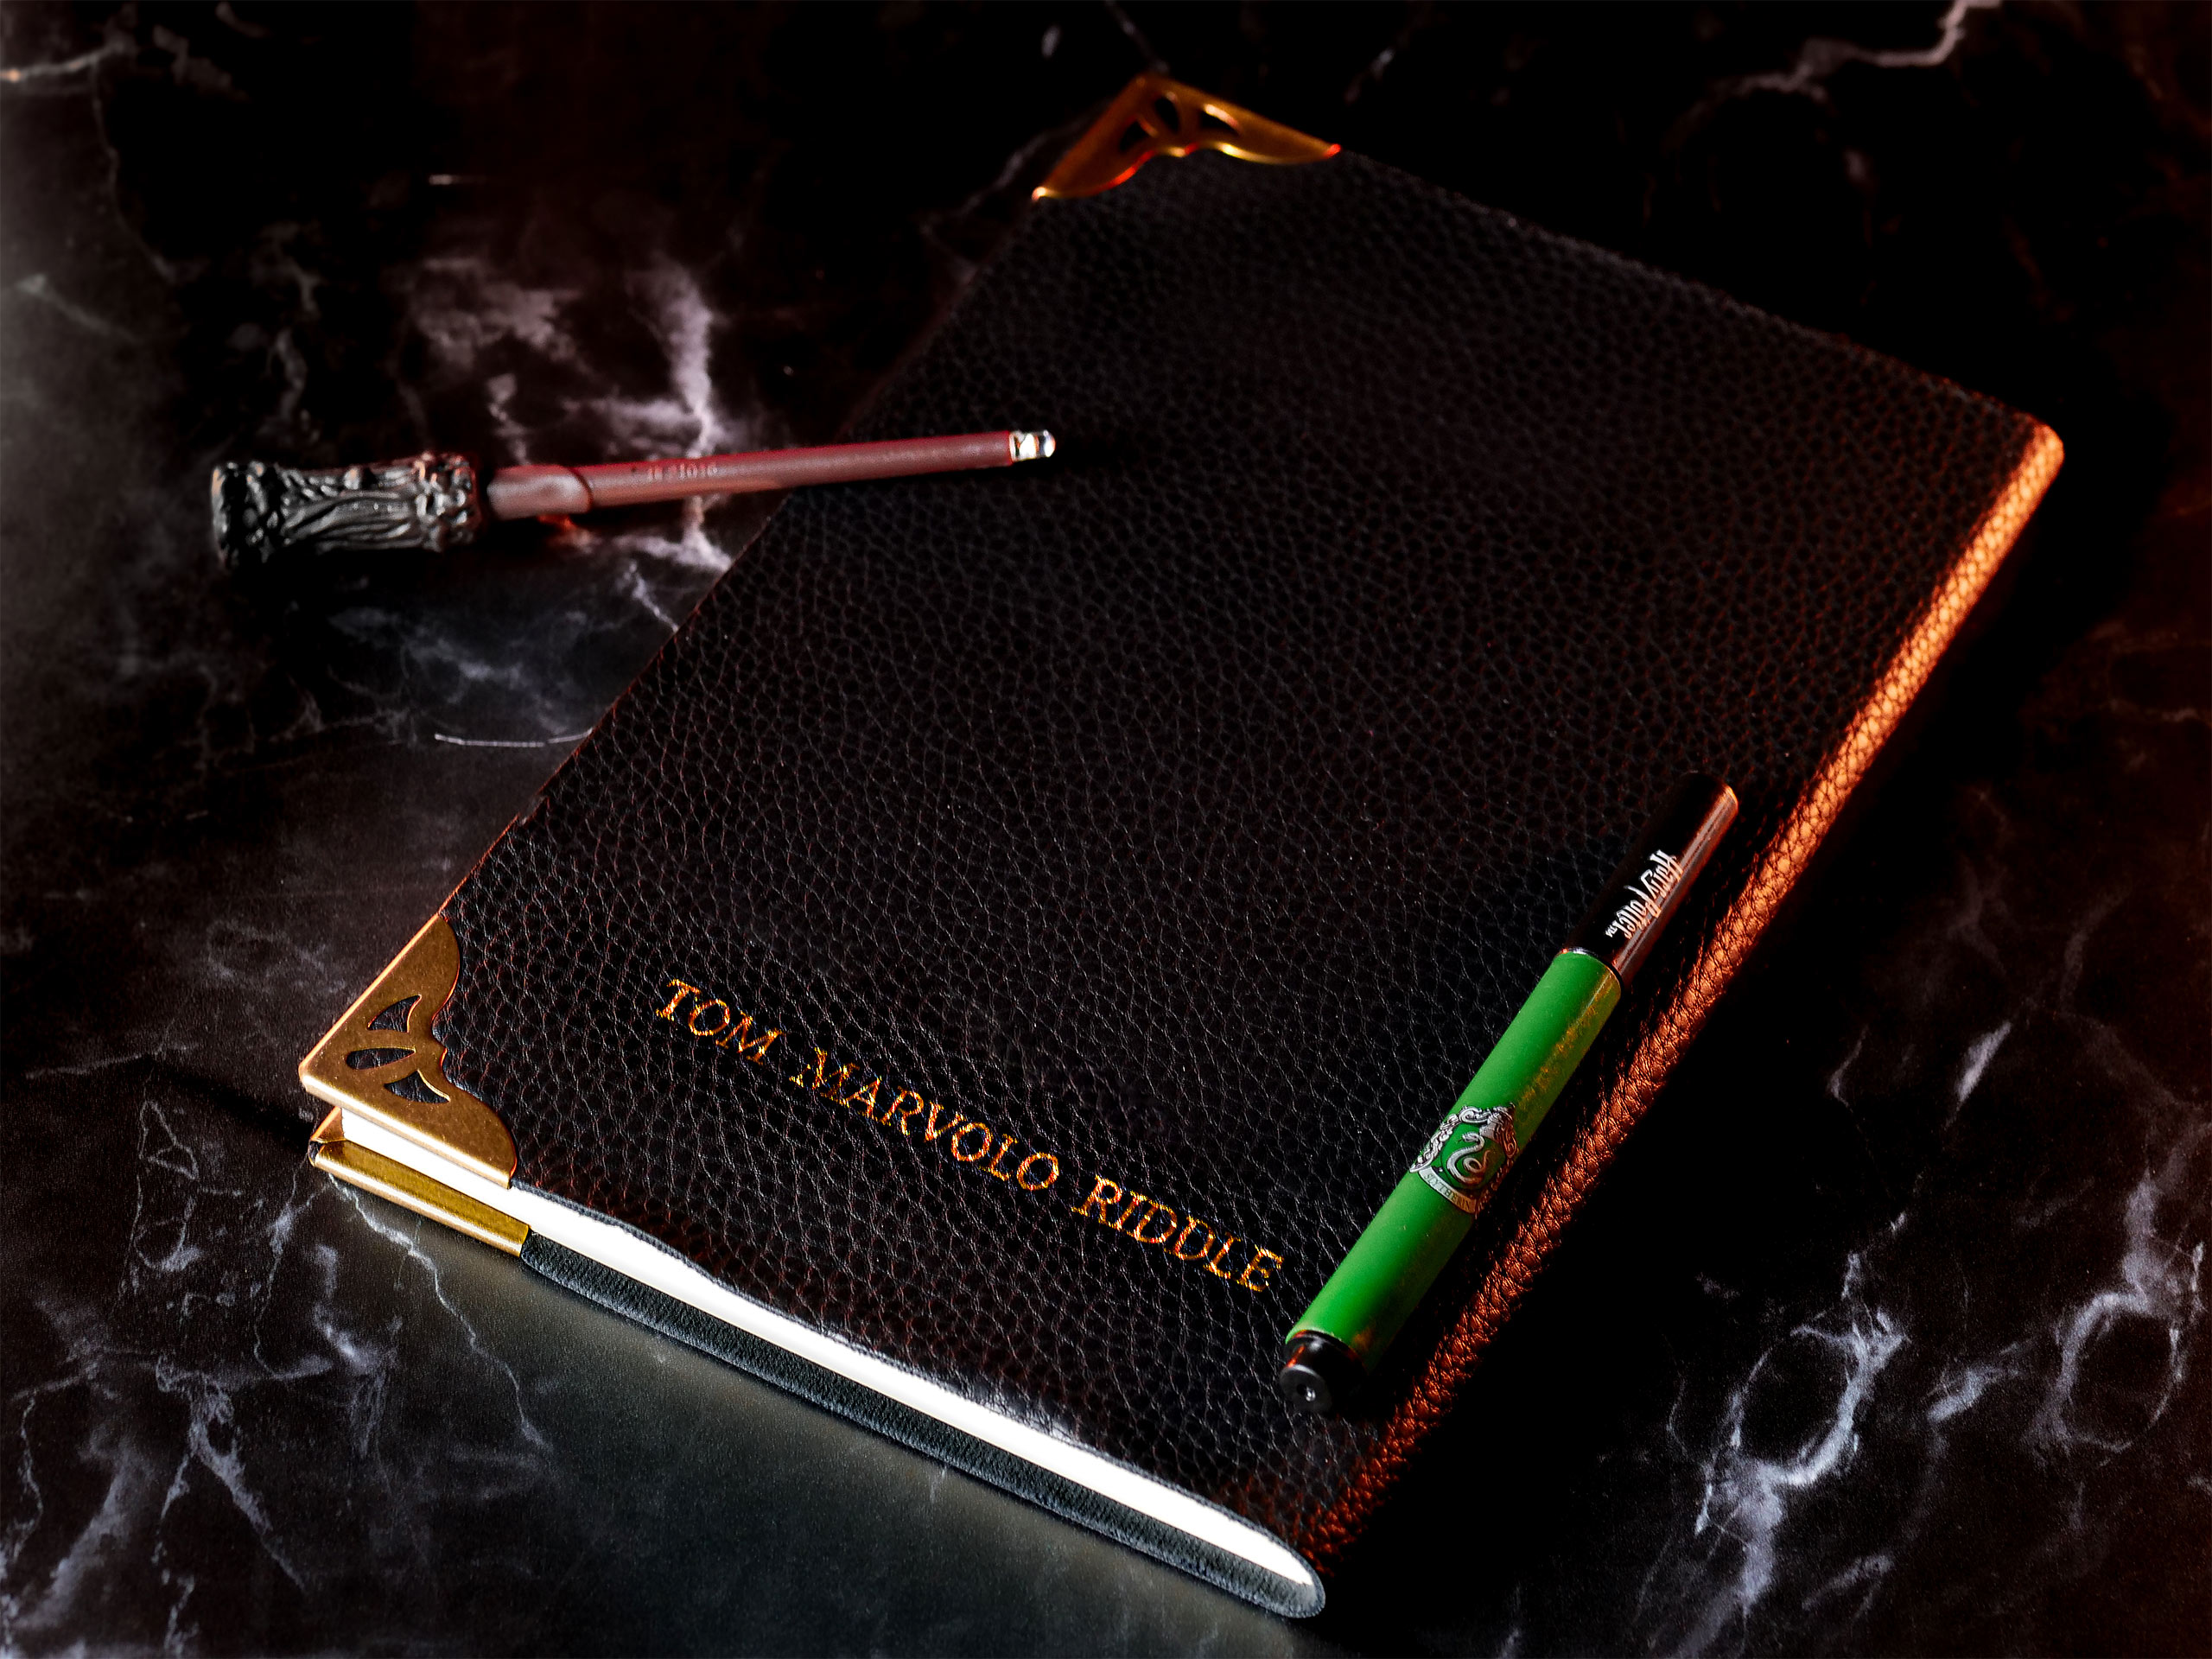 Tom Riddles Tagebuch mit UV-Zauberstab und Stift - Harry Potter